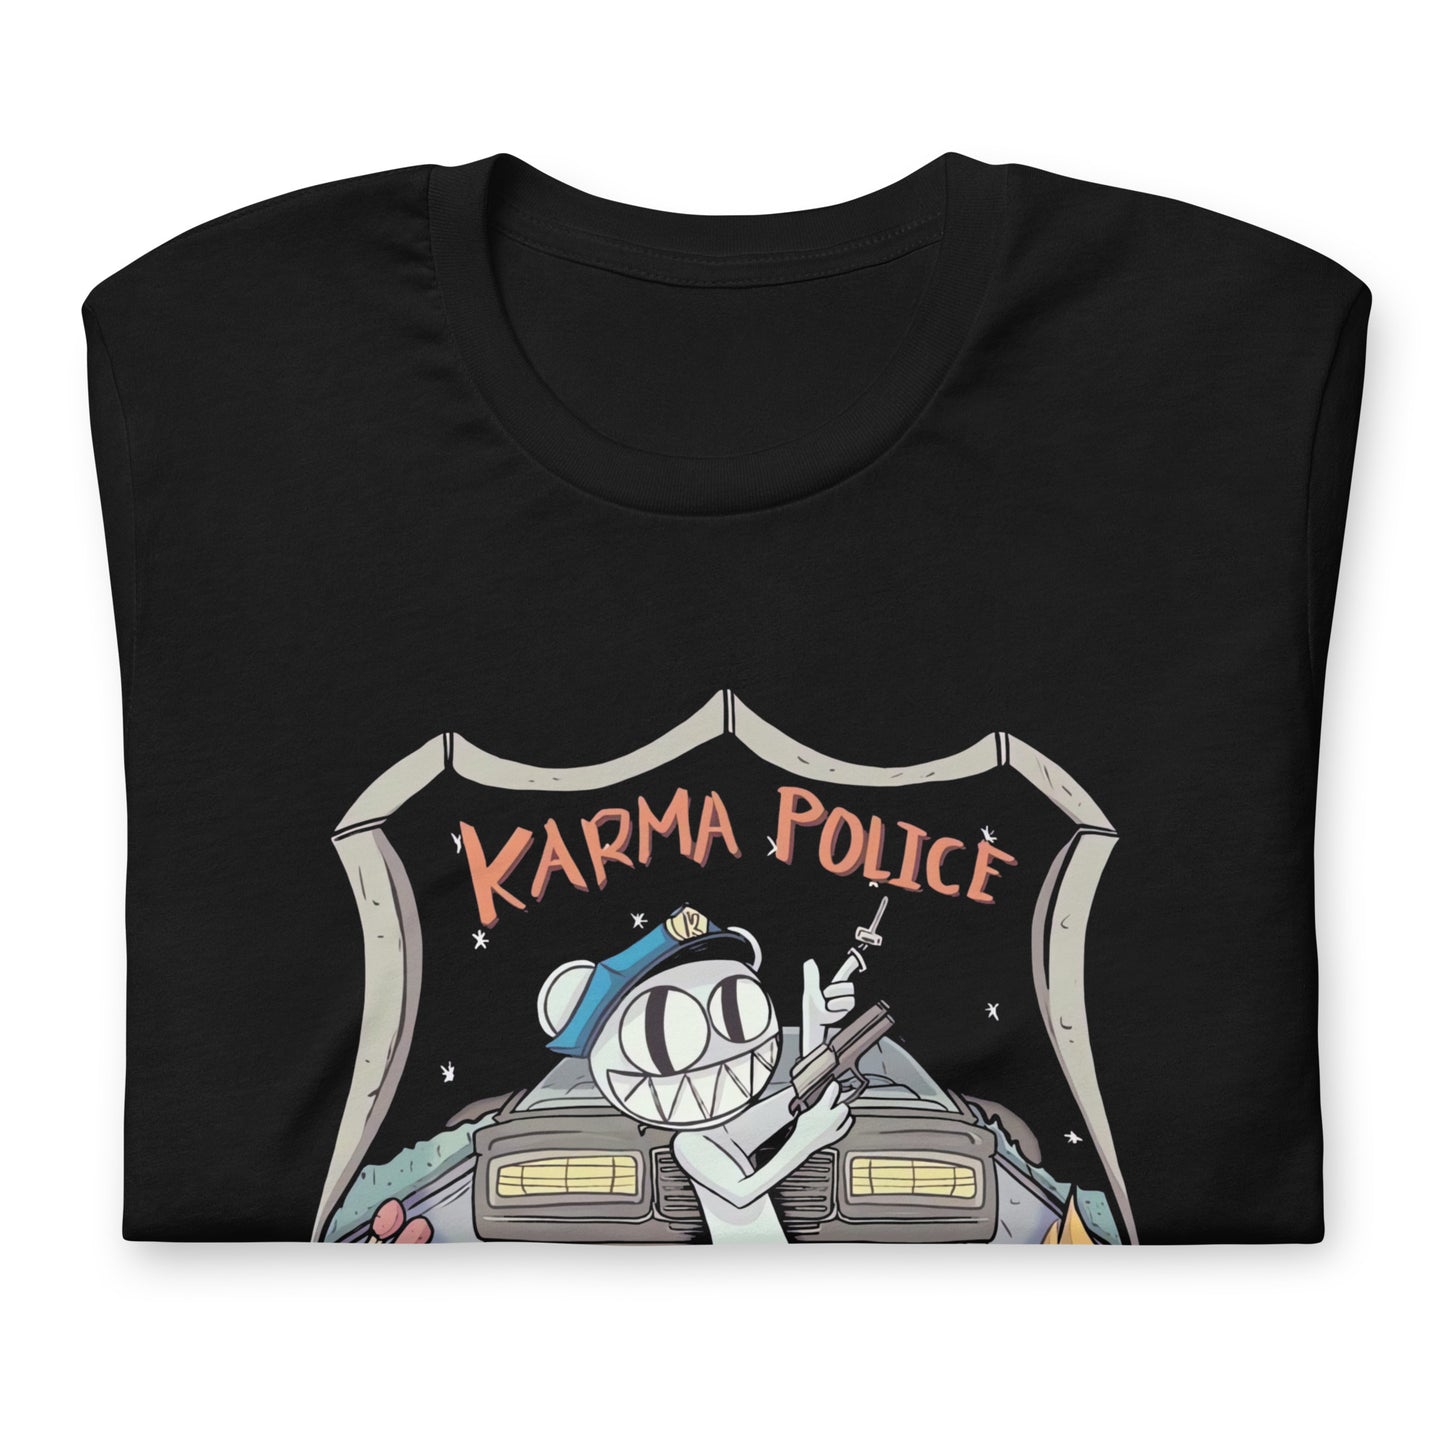 ¡Compra el mejor merchandising en Superstar! Encuentra diseños únicos y de alta calidad en playeras, Karma Police - Radiohead